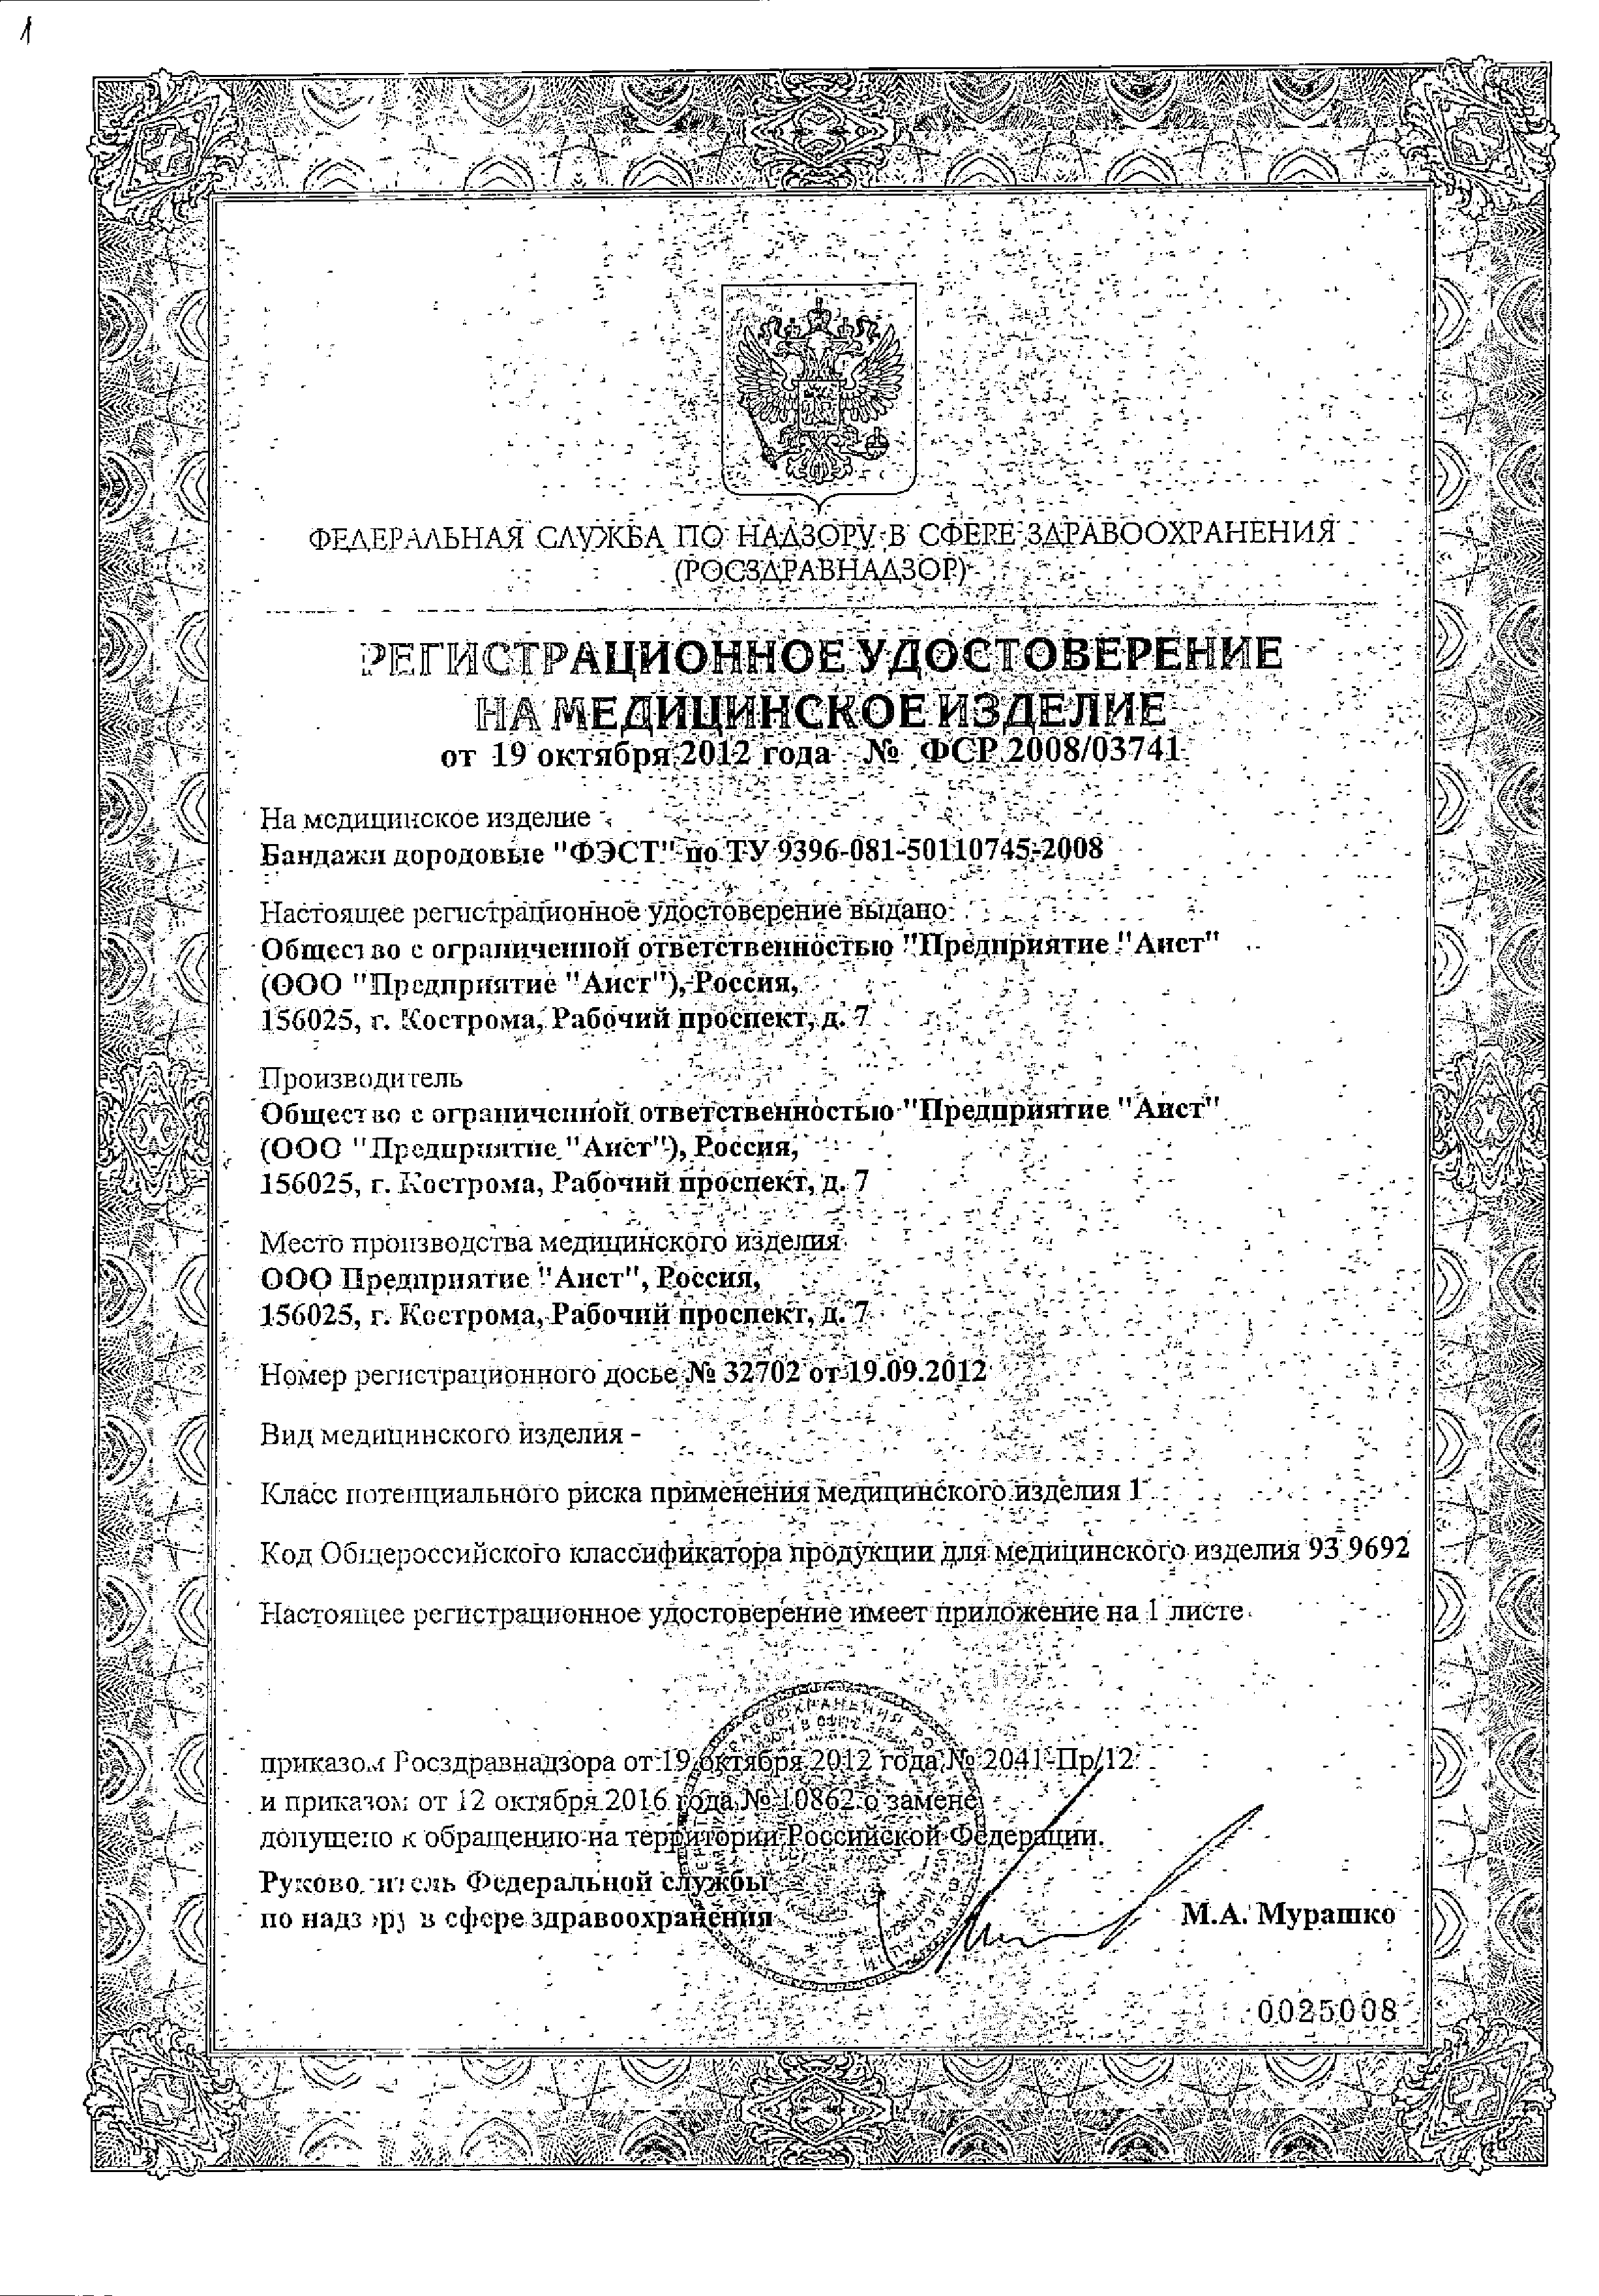 Бандаж универсальный ФЭСТ сертификат